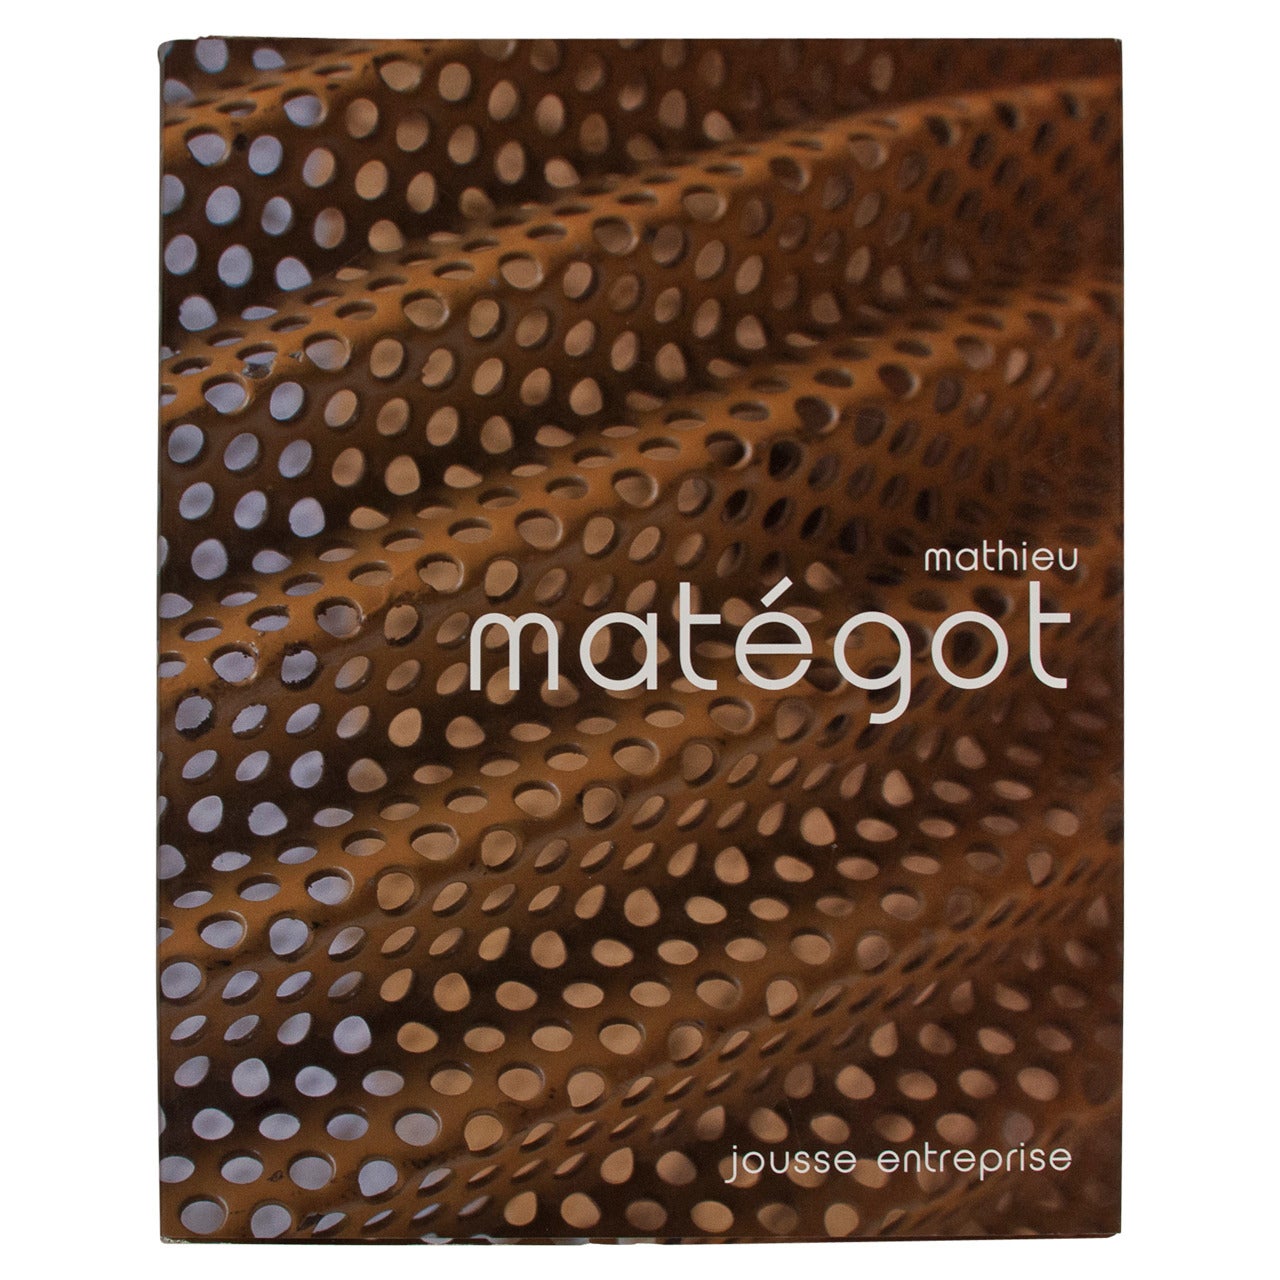 "Mathieu Mategot" Book by Jousse Entreprise